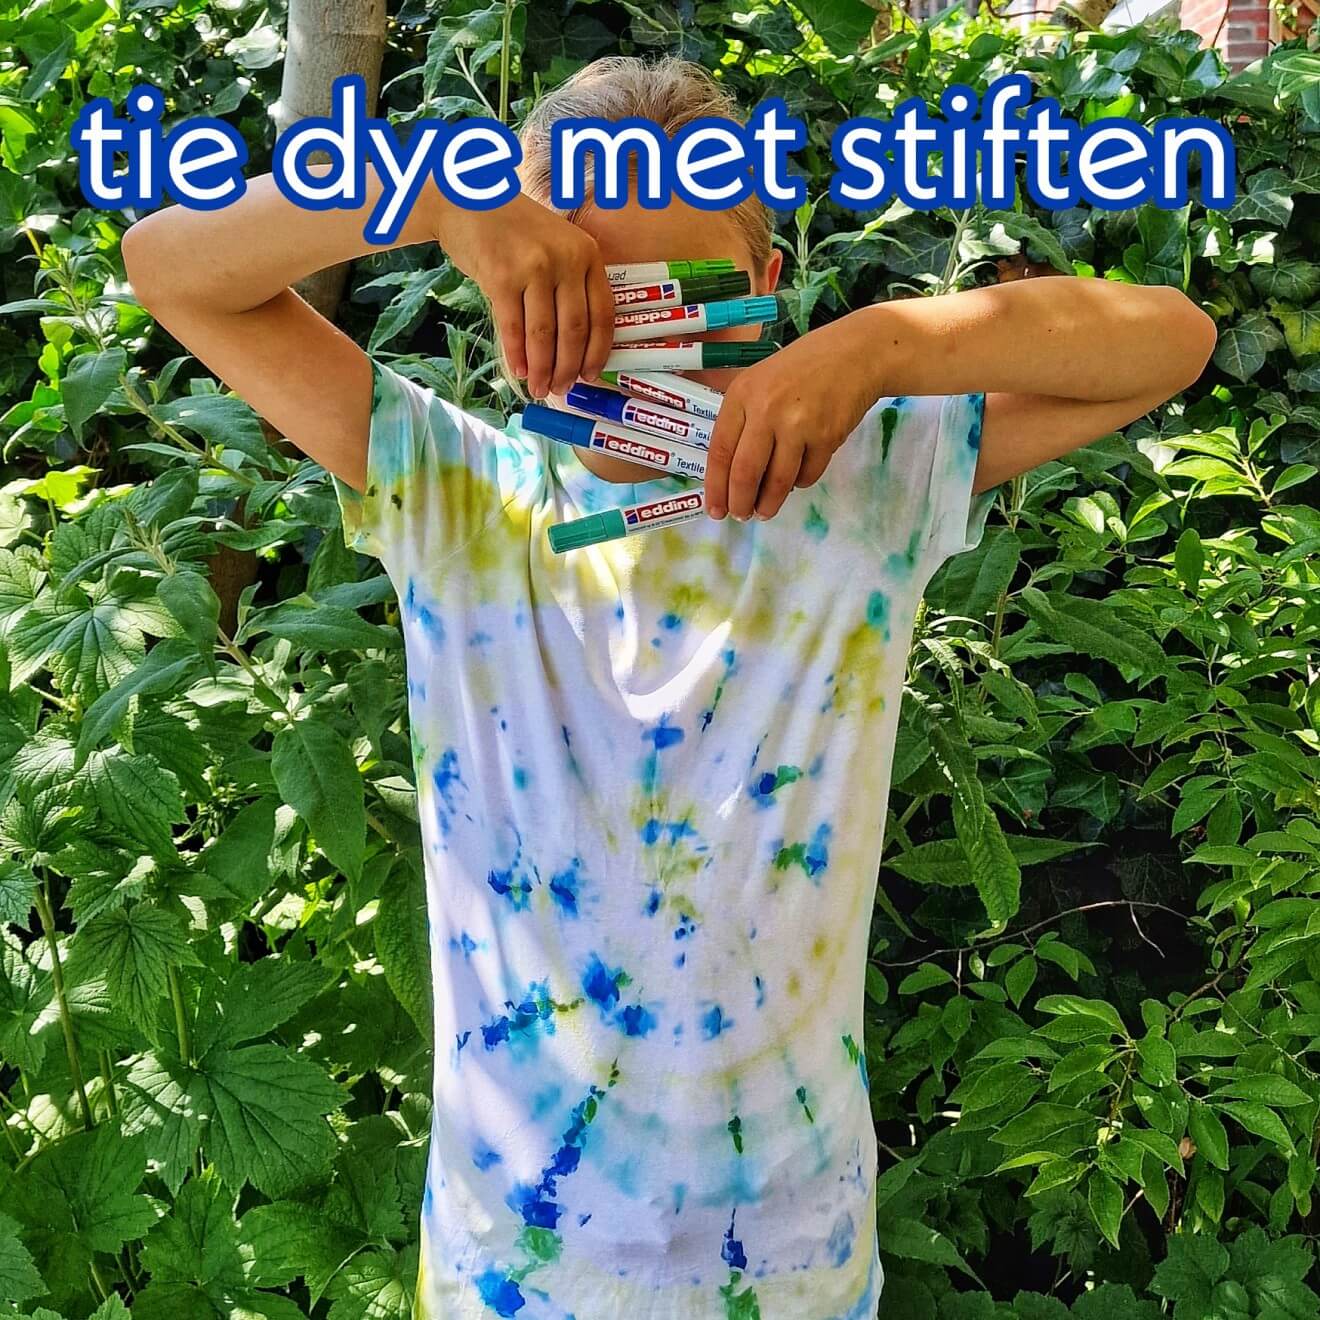 Tie dye shirt maken: makkelijker met stiften Een tie dye shirt met verf maken is hartstikke leuk, maar wel een kliederboel. Met stiften is een tie dye shirt maken veel makkelijker.